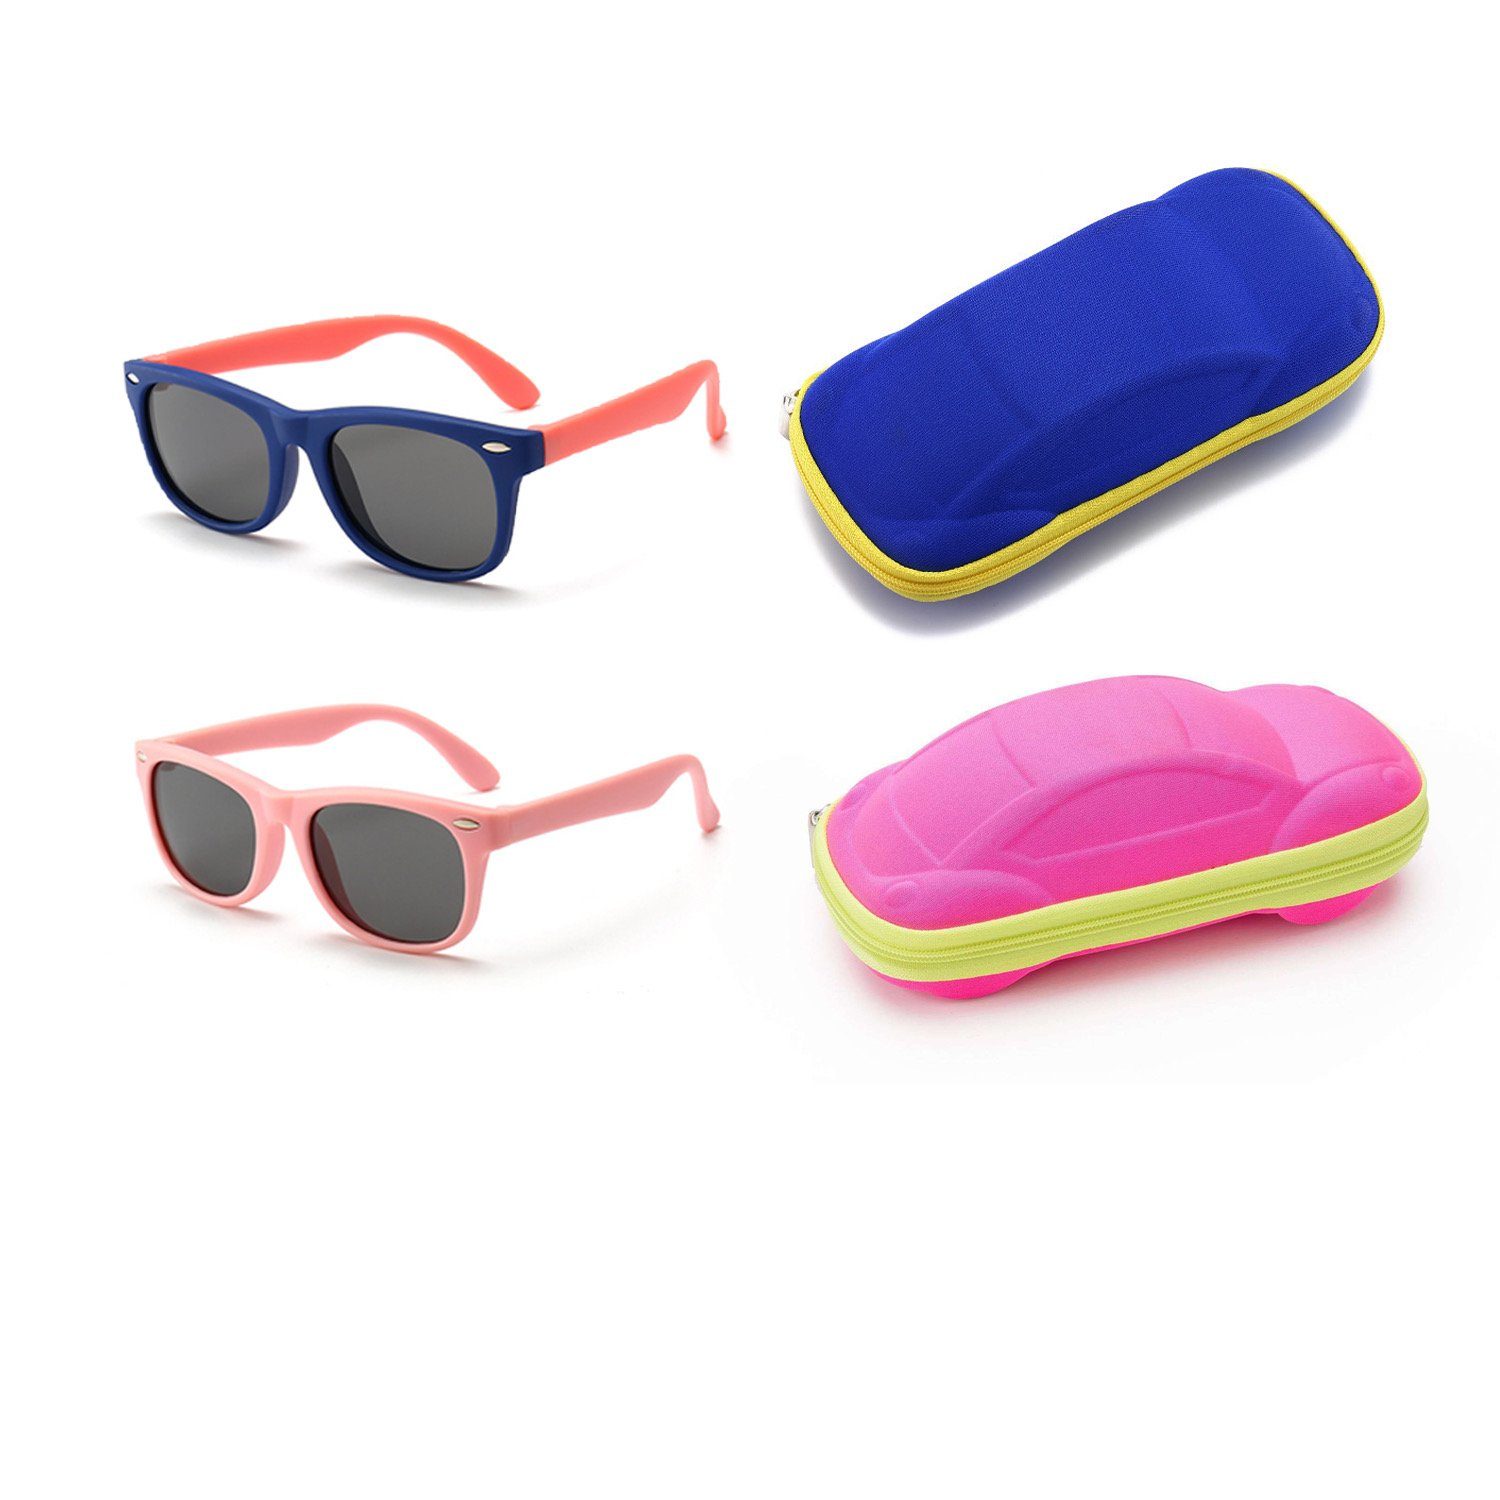 Gummi mit Brillenetui Jungen Mädchen Olotos Kinder Brille Schutz 100% Dunkelblau+Rosa Sonnenbrille für UV400 Sonnenbrille